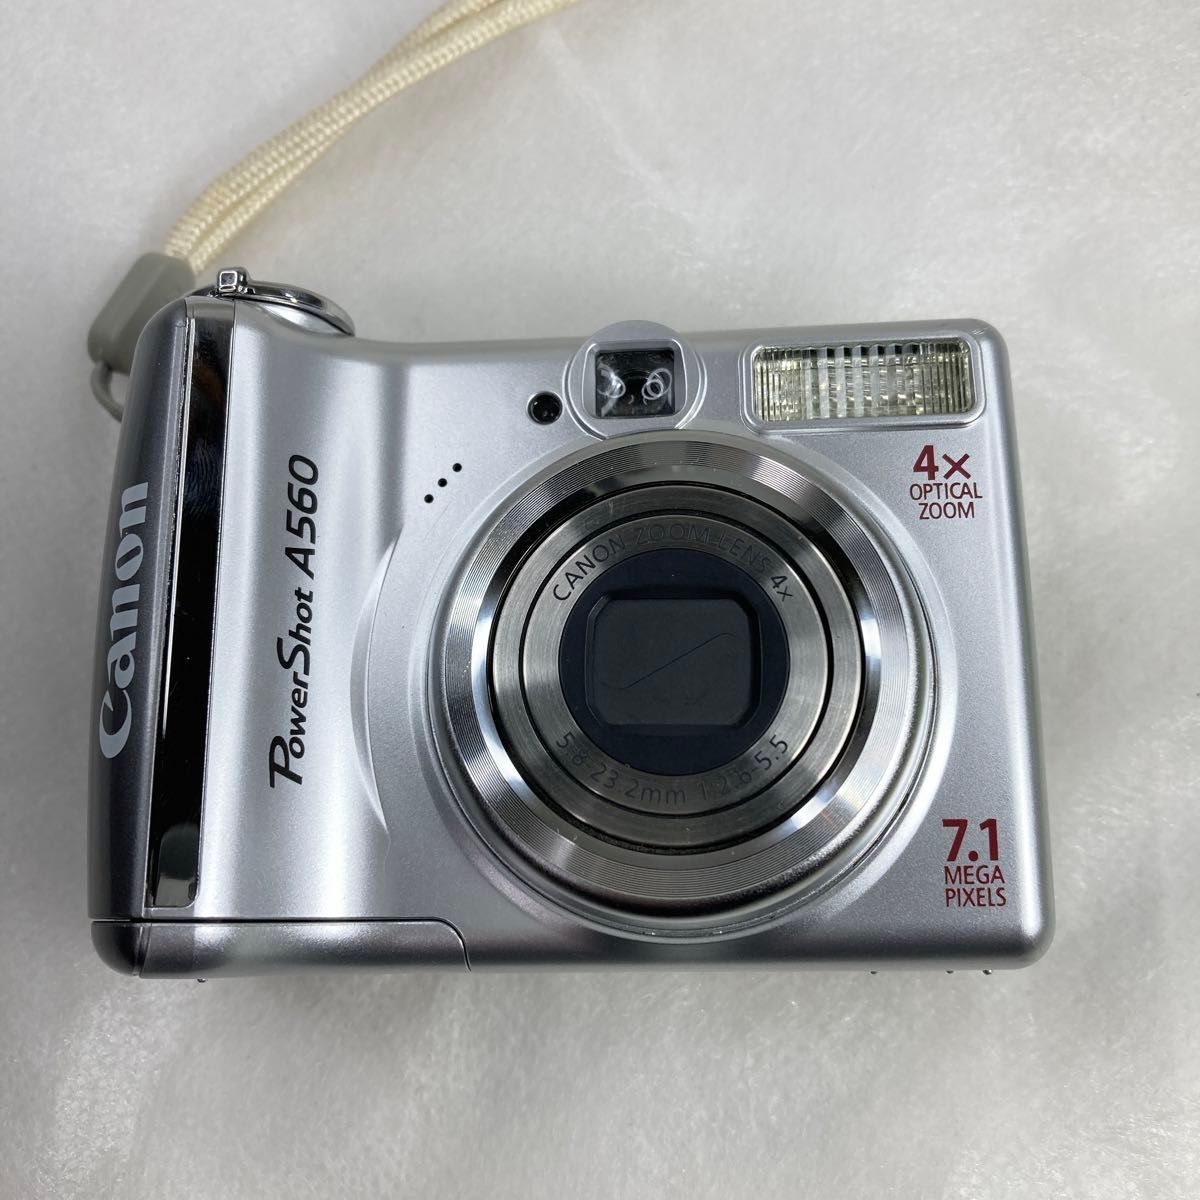 Canon キャノン コンパクトデジタルカメラ PowerShot A560 乾電池式